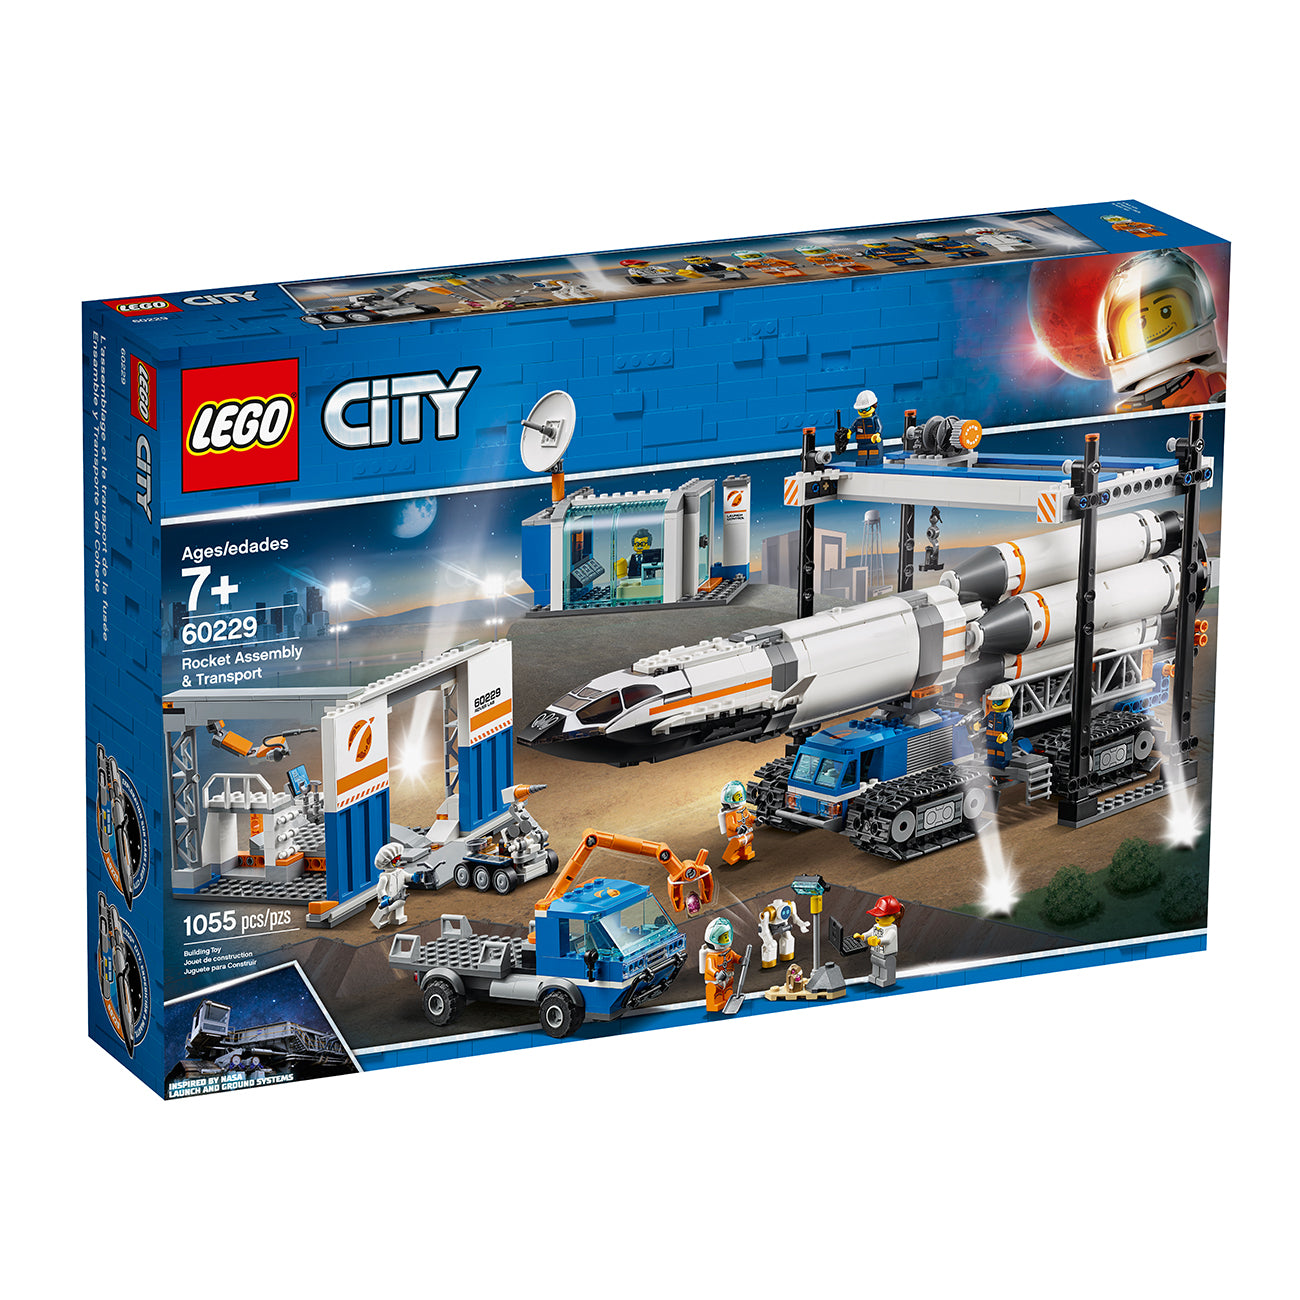 Afskedige Defekt forestille LEGO Rocket Assembly & Transport – The Boeing Store